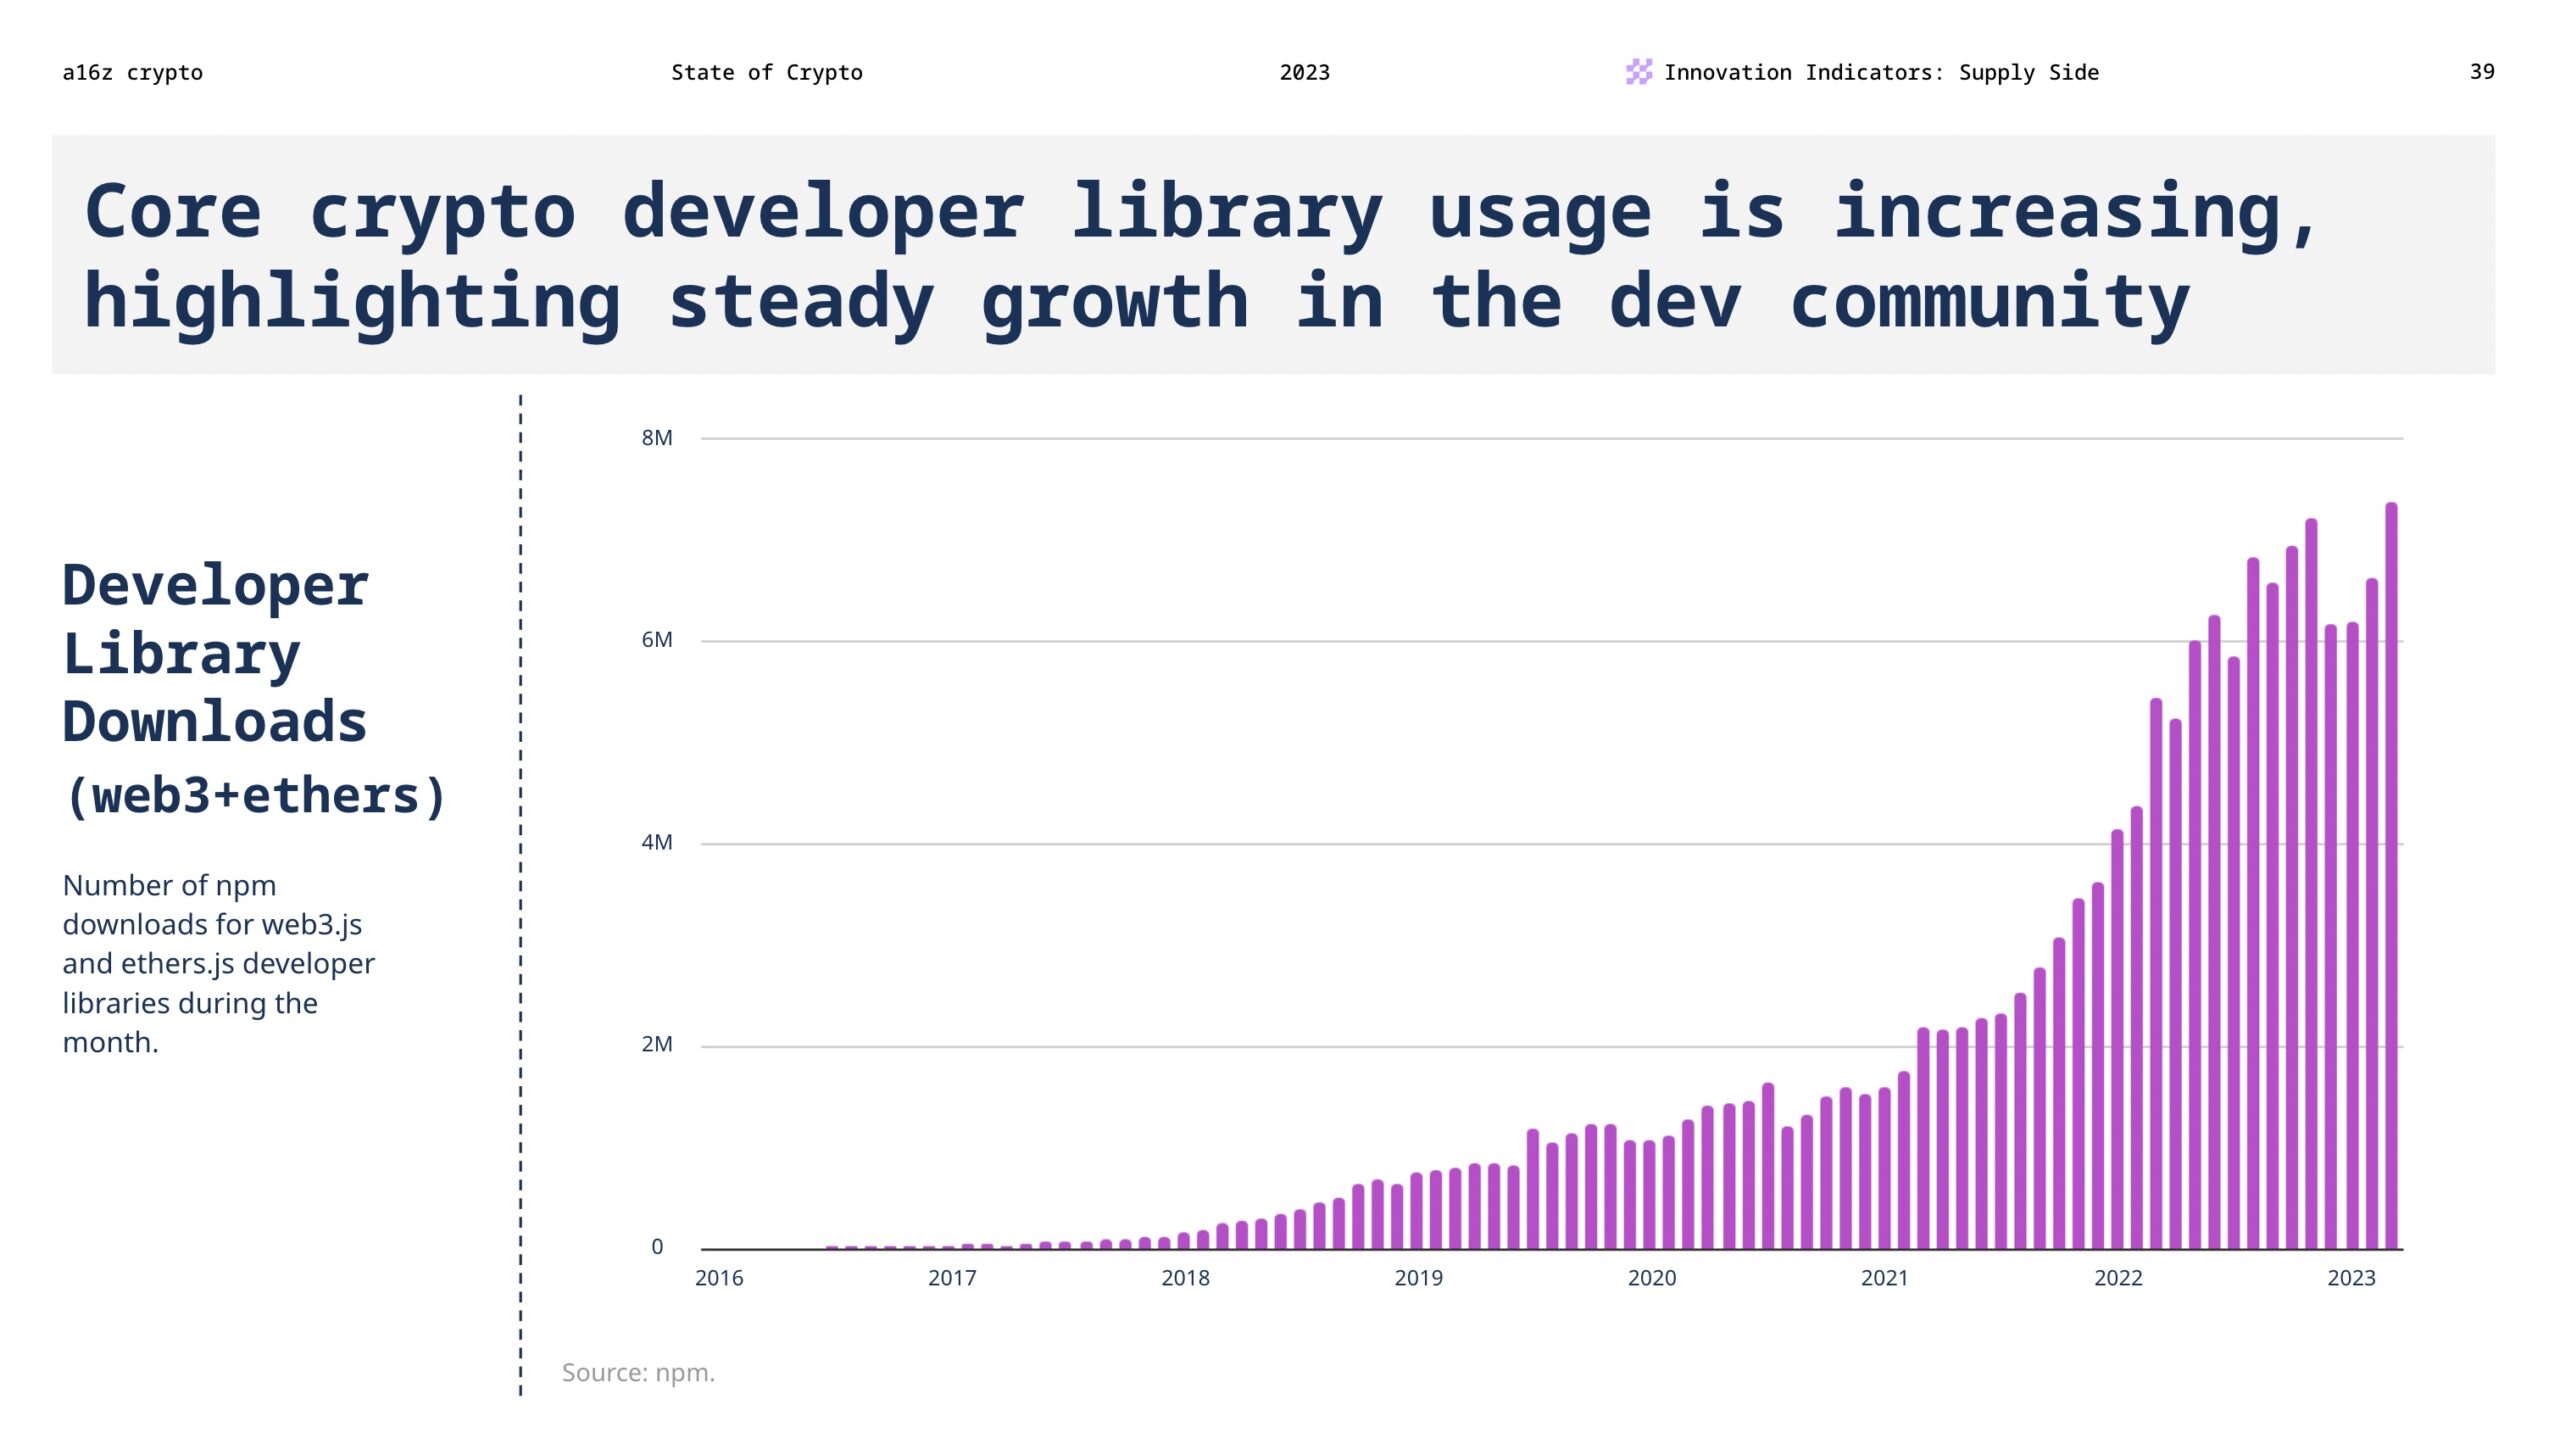 Die Nutzung der Core-Krypto-Entwicklerbibliothek nimmt zu, was das stetige Wachstum in der Community unterstreicht